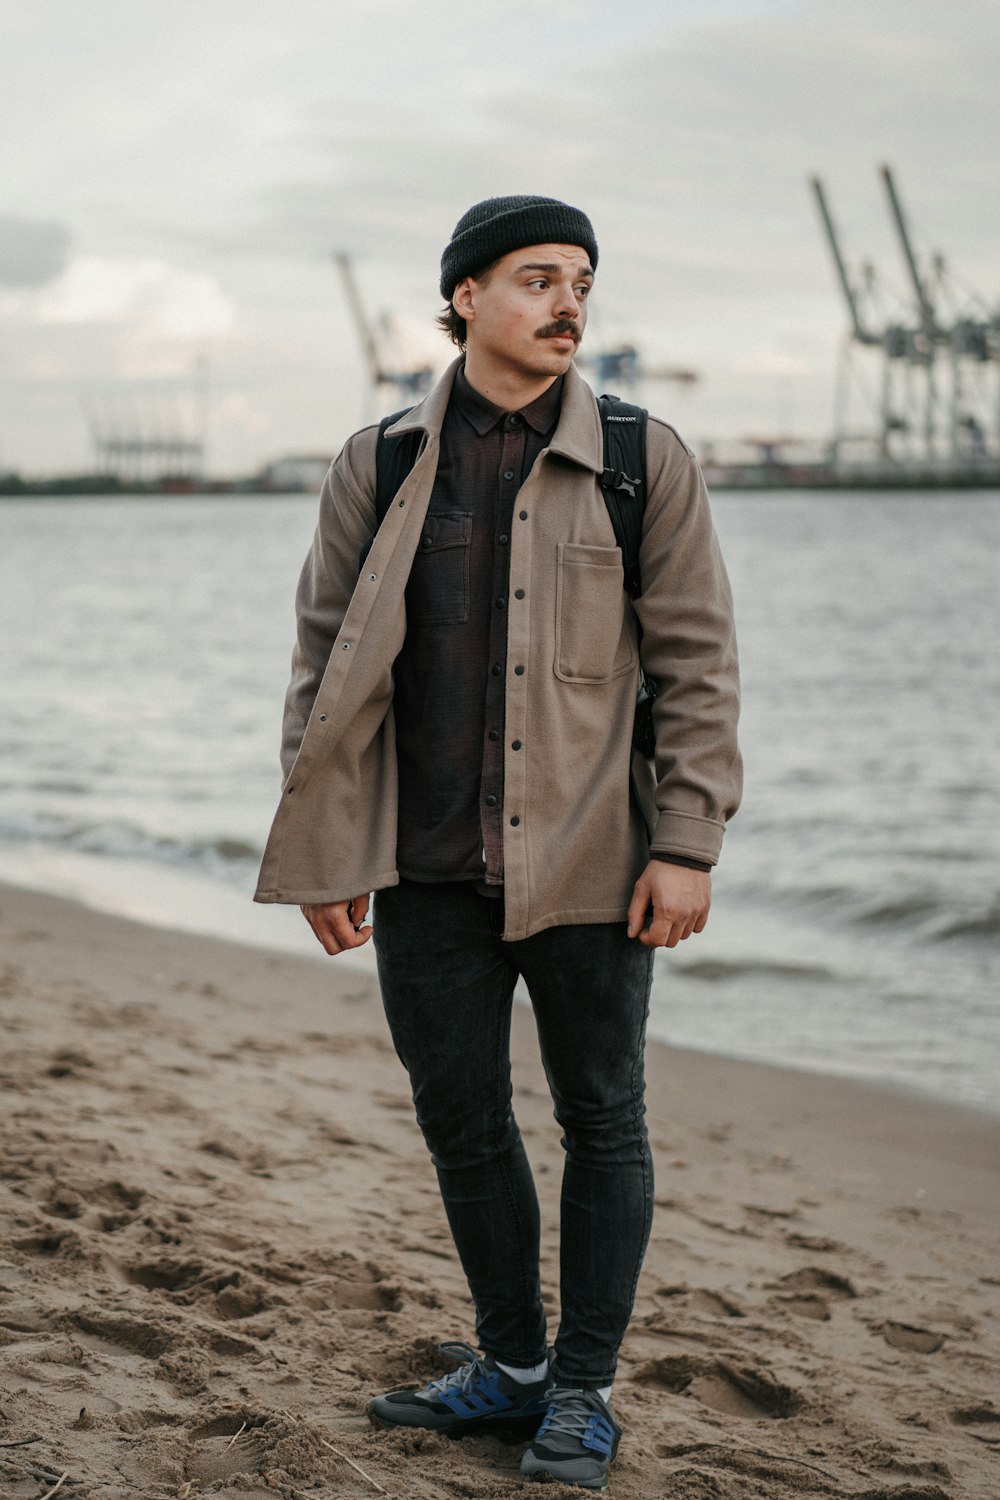 a man standing on a beach